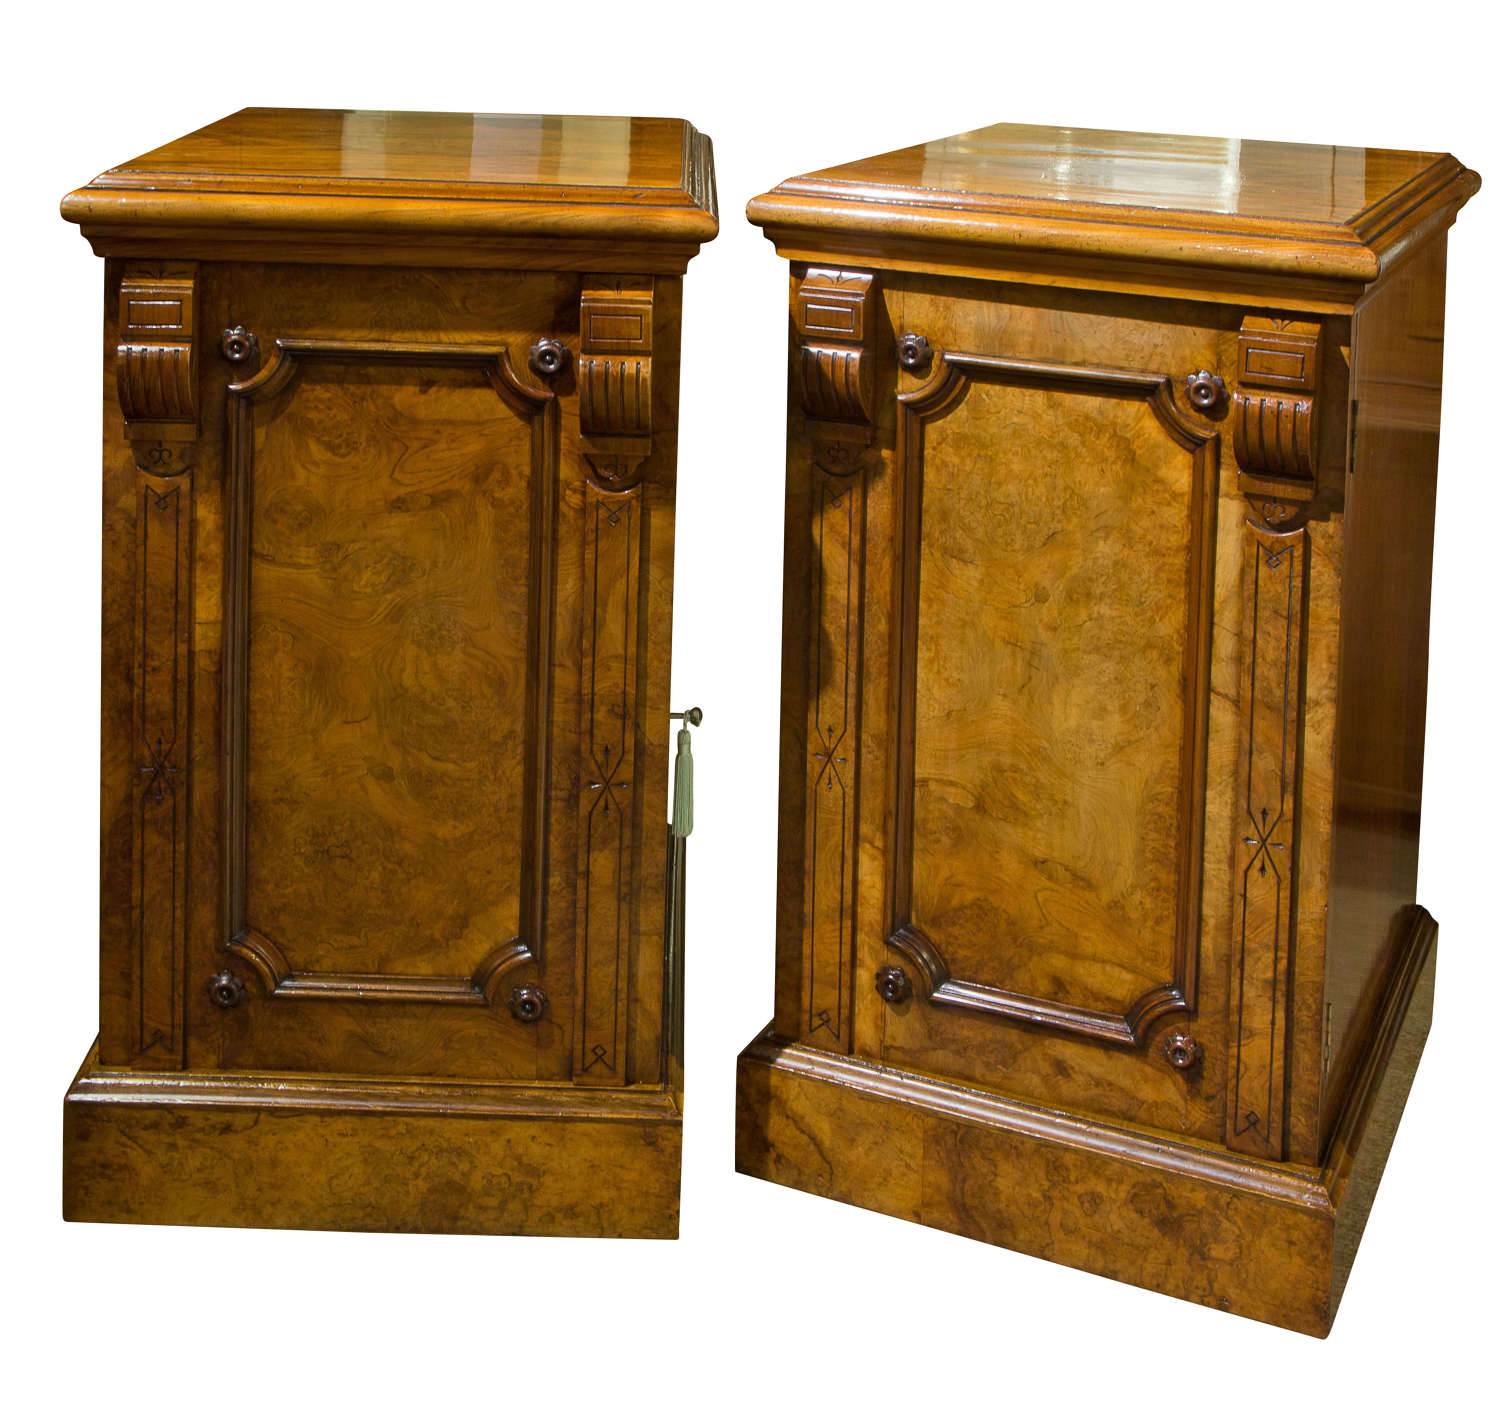 A fine pair of Victorian walnut pedestals c1870